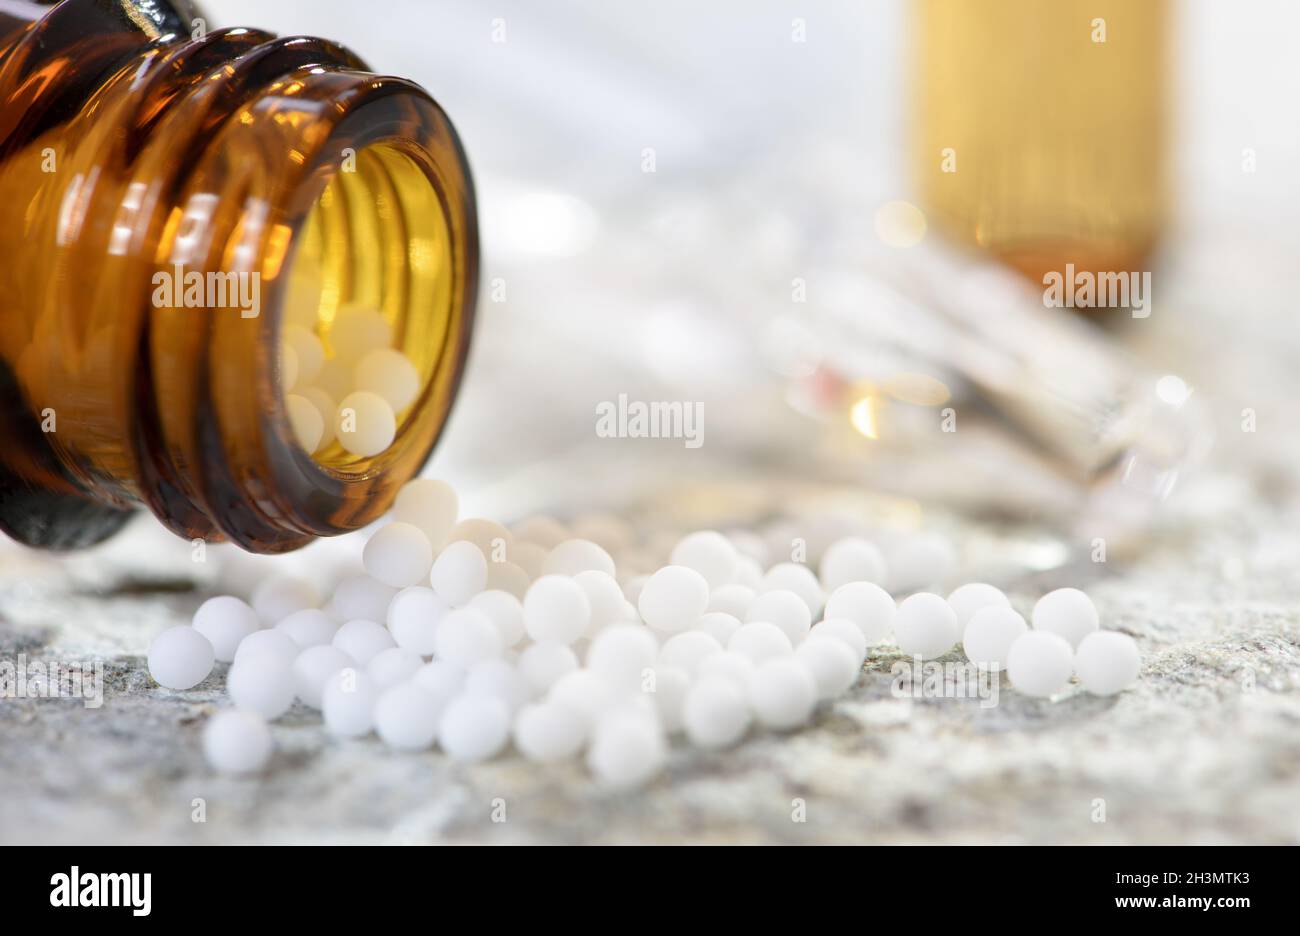 Medicina alternativa con píldoras herbarias y homeopáticas Foto de stock